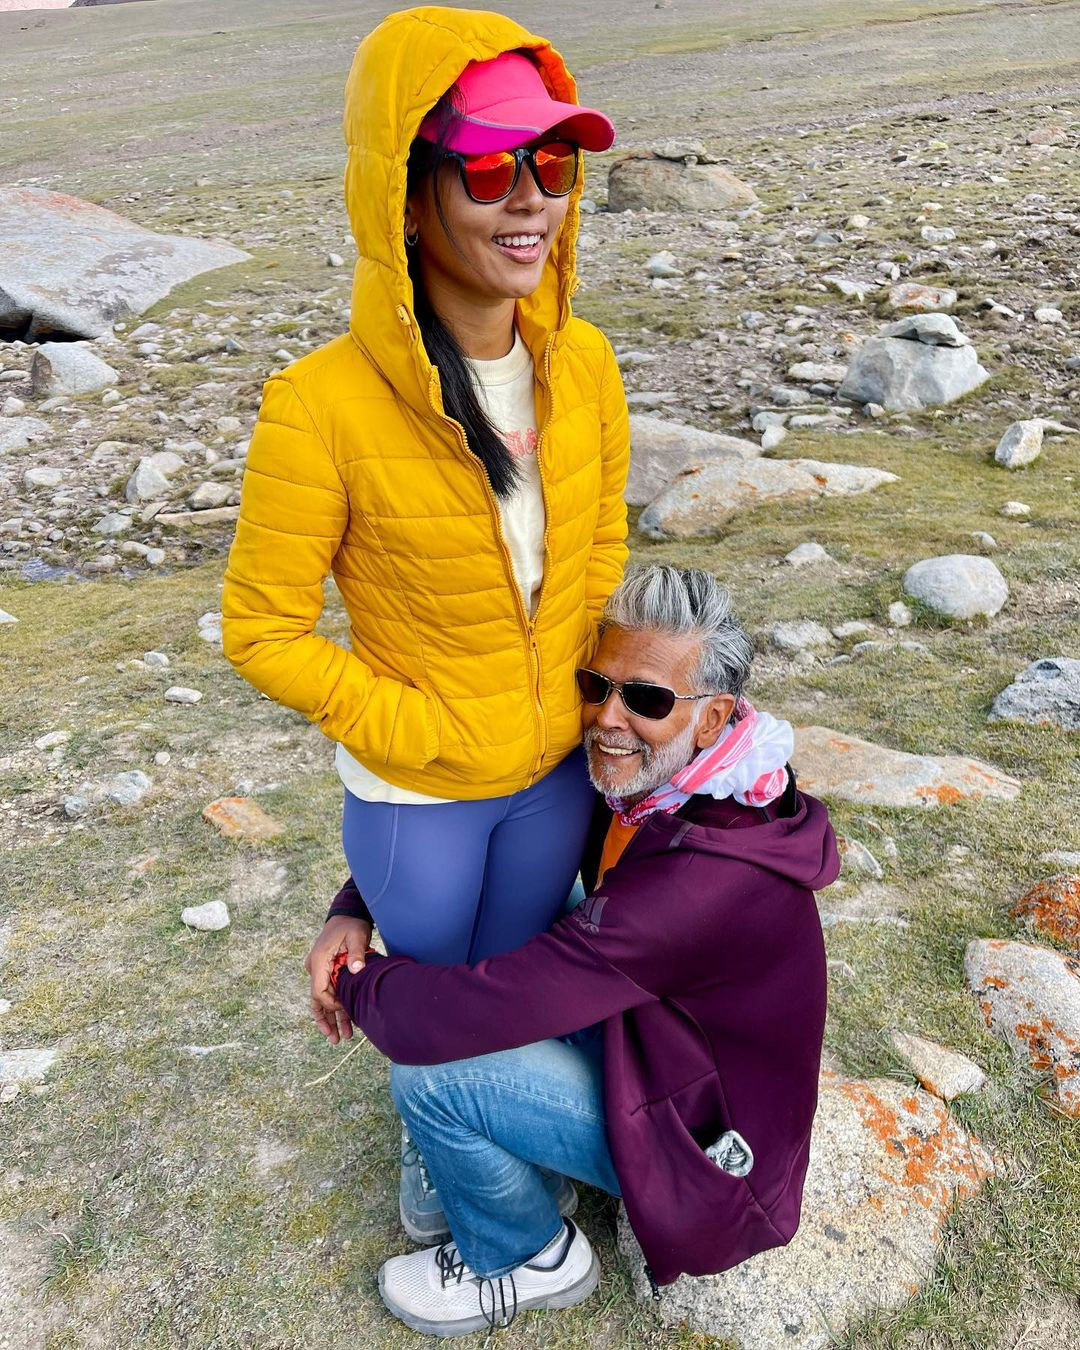 17,000 फीट की ऊंचाई पर मिलिंद सोमन ने पकड़े पत्‍नी अंकिता के पैर, देखें तस्‍वीरें